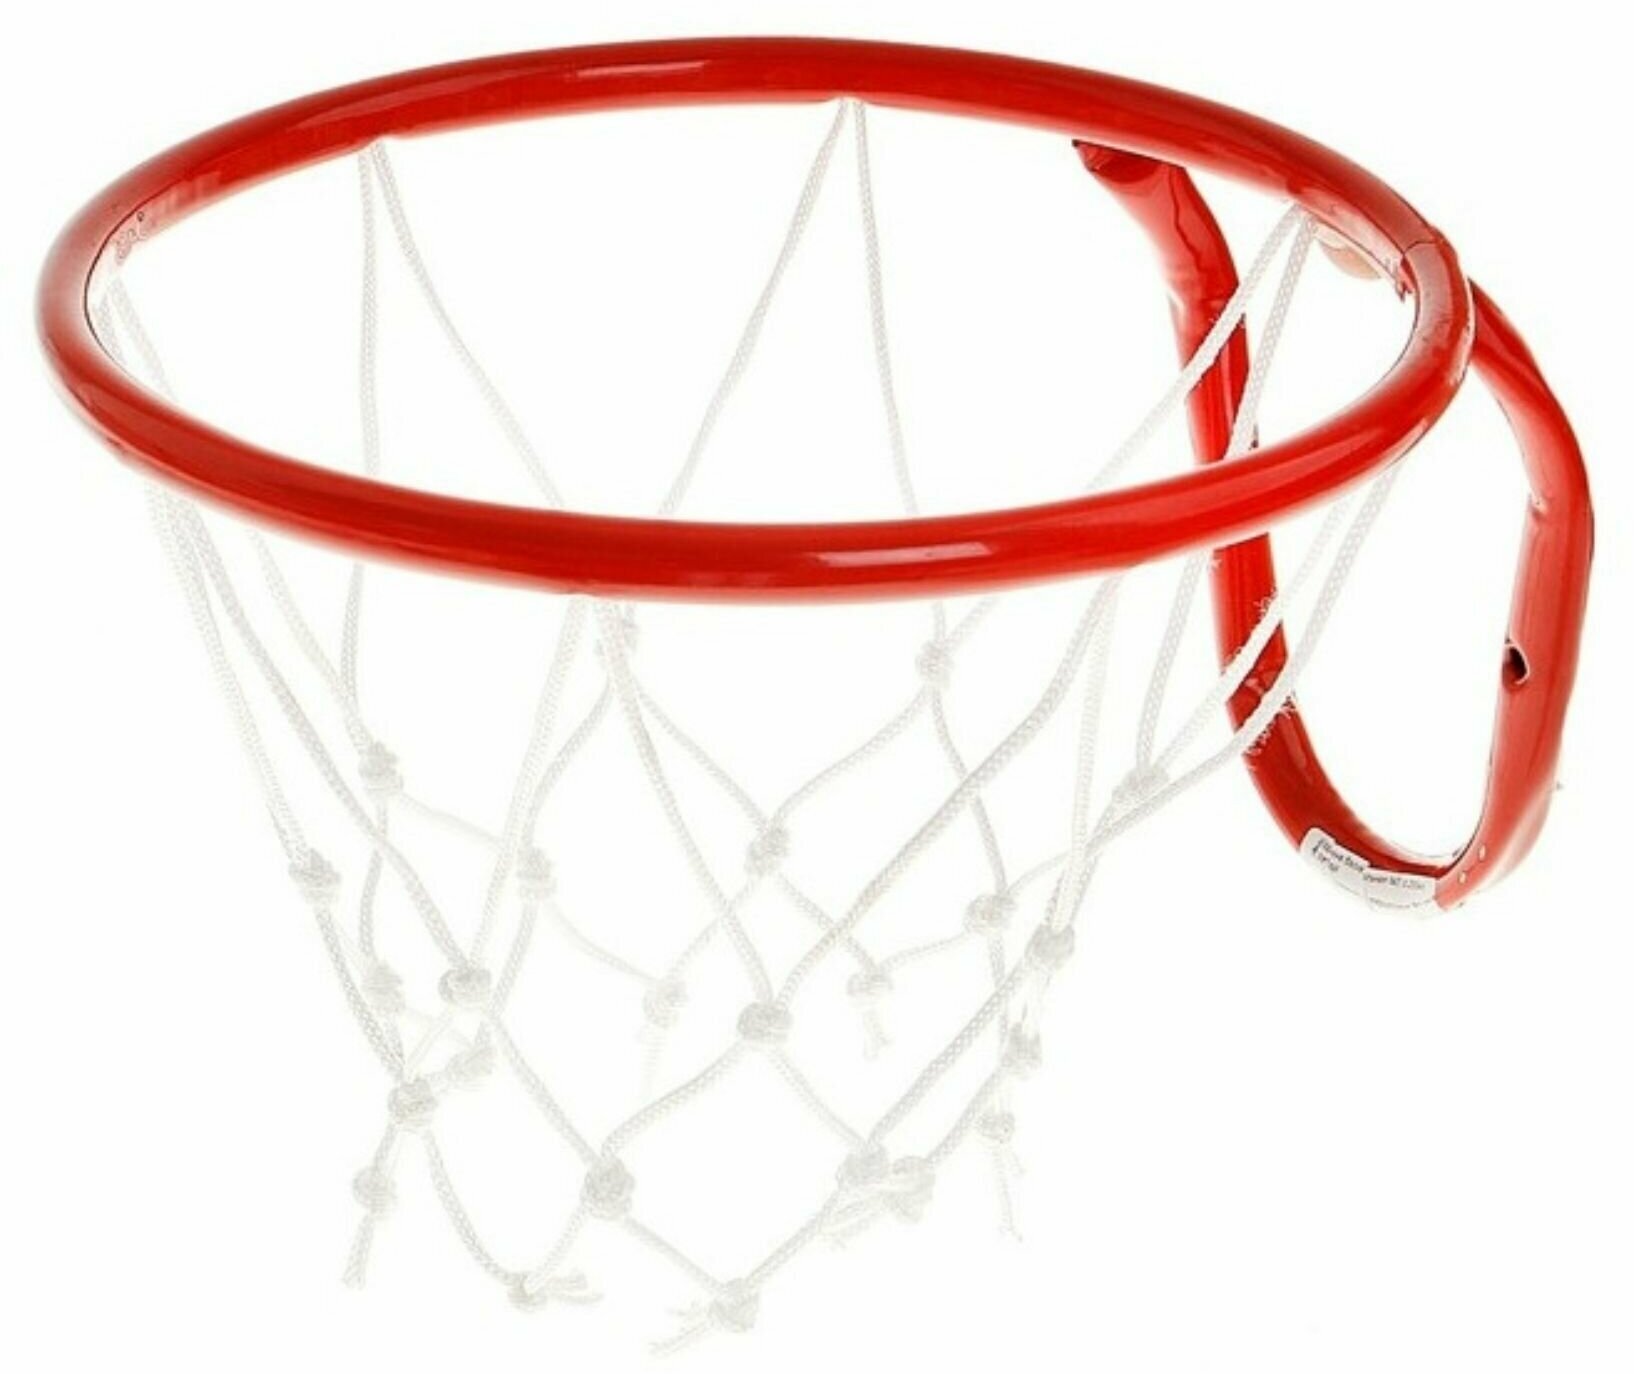 Кольцо баскетбольное с корзиной и сеткой 295 мм, спорттовары